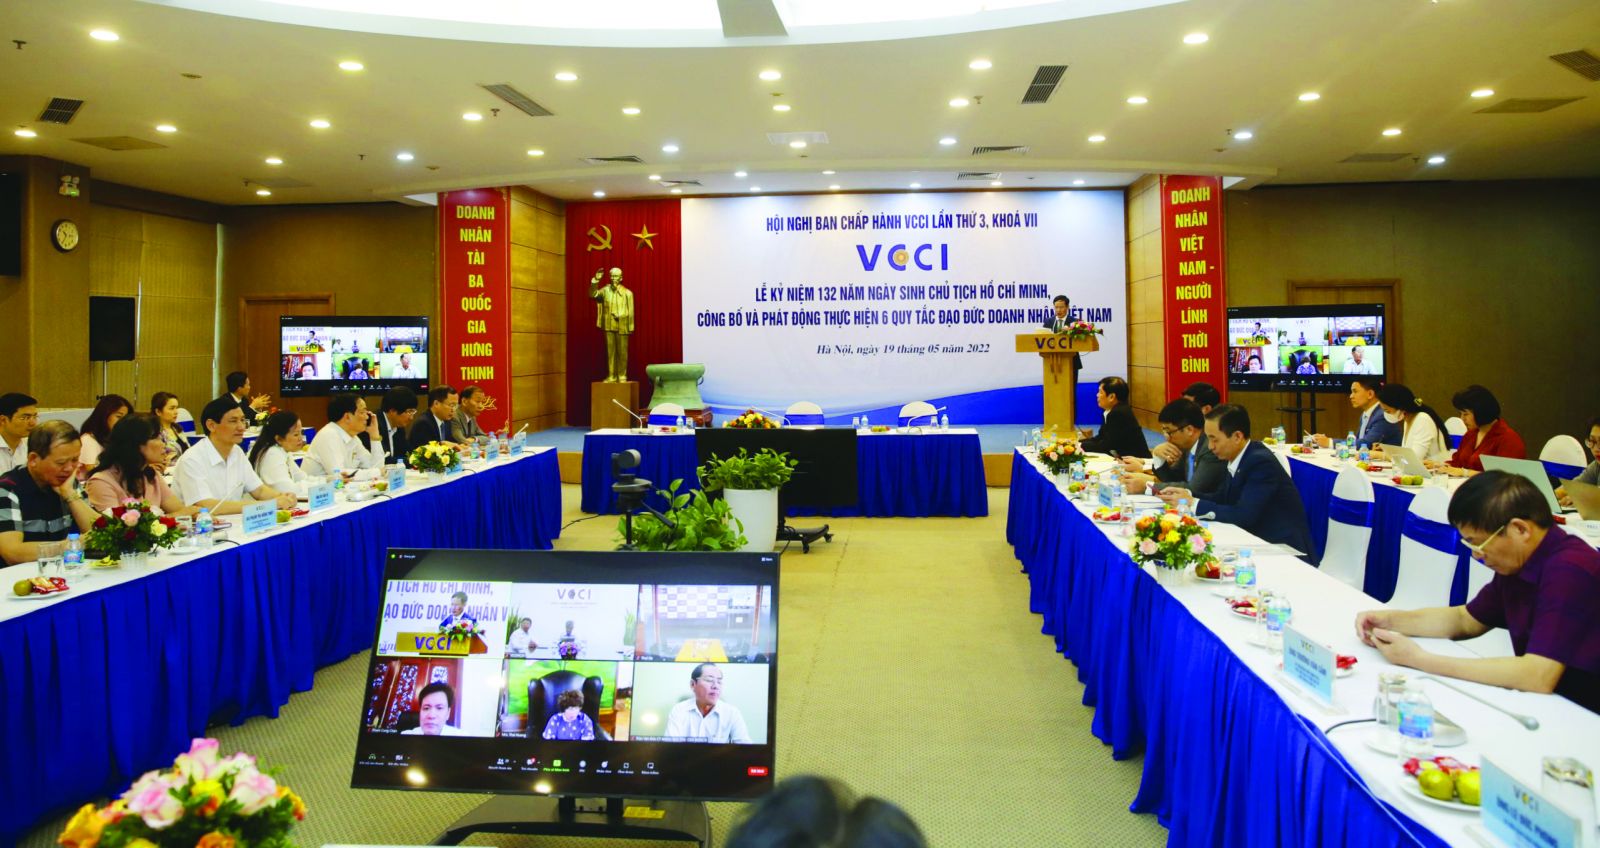  Chủ tịch VCCI Phạm Tấn Công phát biểu tại Lễ công bố và phát động thực hiện Quy tắc đạo đức doanh nhân Việt Nam.